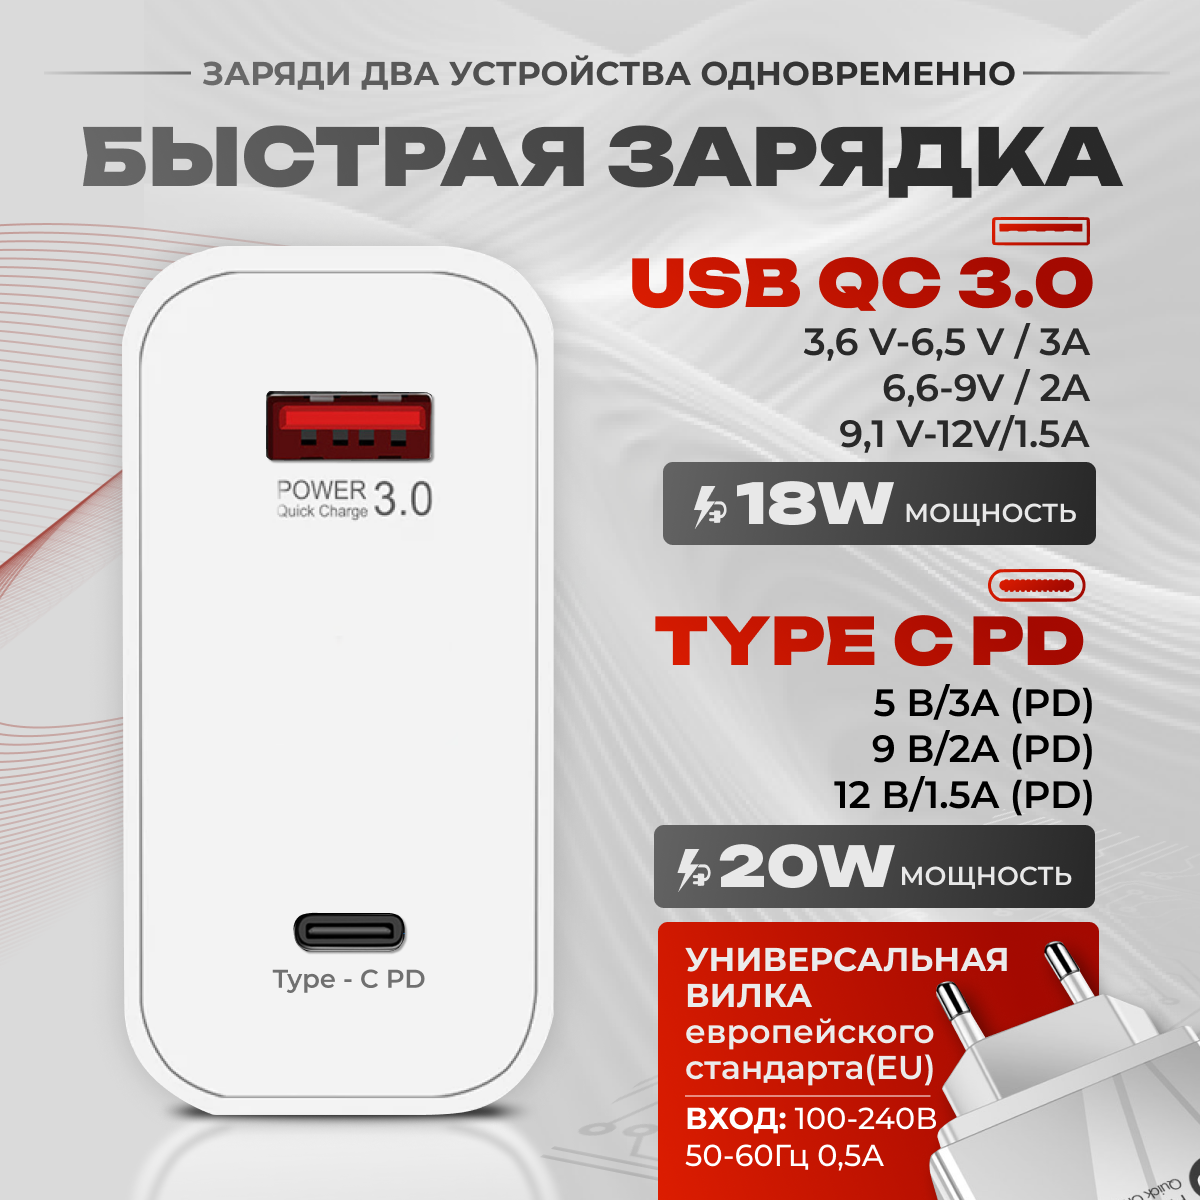 Сетевое зарядное устройство для телефона 20 Вт, 2 USB порта Type C PD + USB QC 3.0, быстрая зарядка, белая